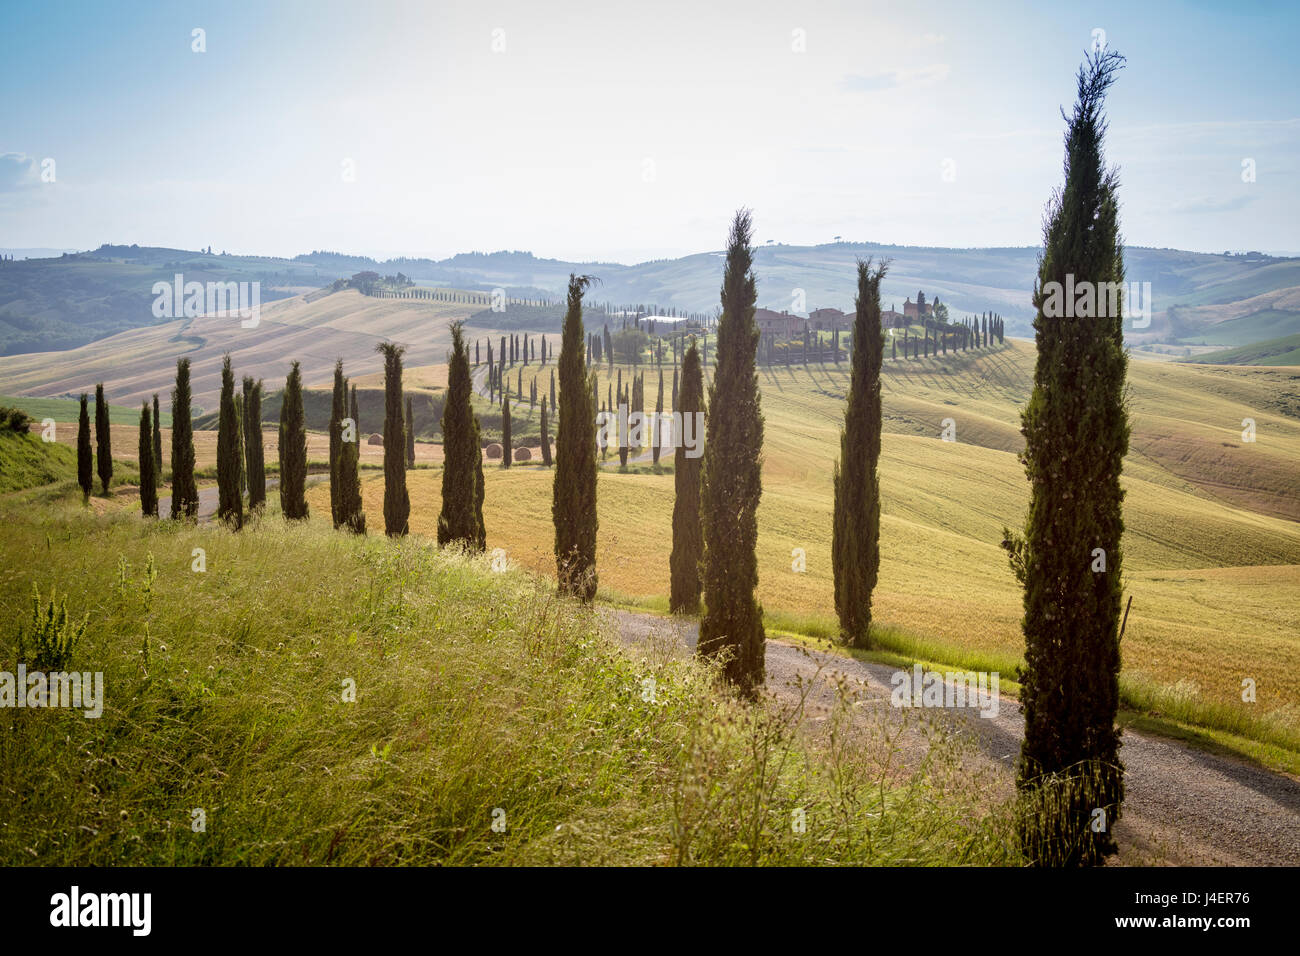 Las curvas de la carretera en las verdes colinas rodeado de cipreses, Crete Senesi (arcillas Senese), provincia de Siena, Toscana, Italia Foto de stock